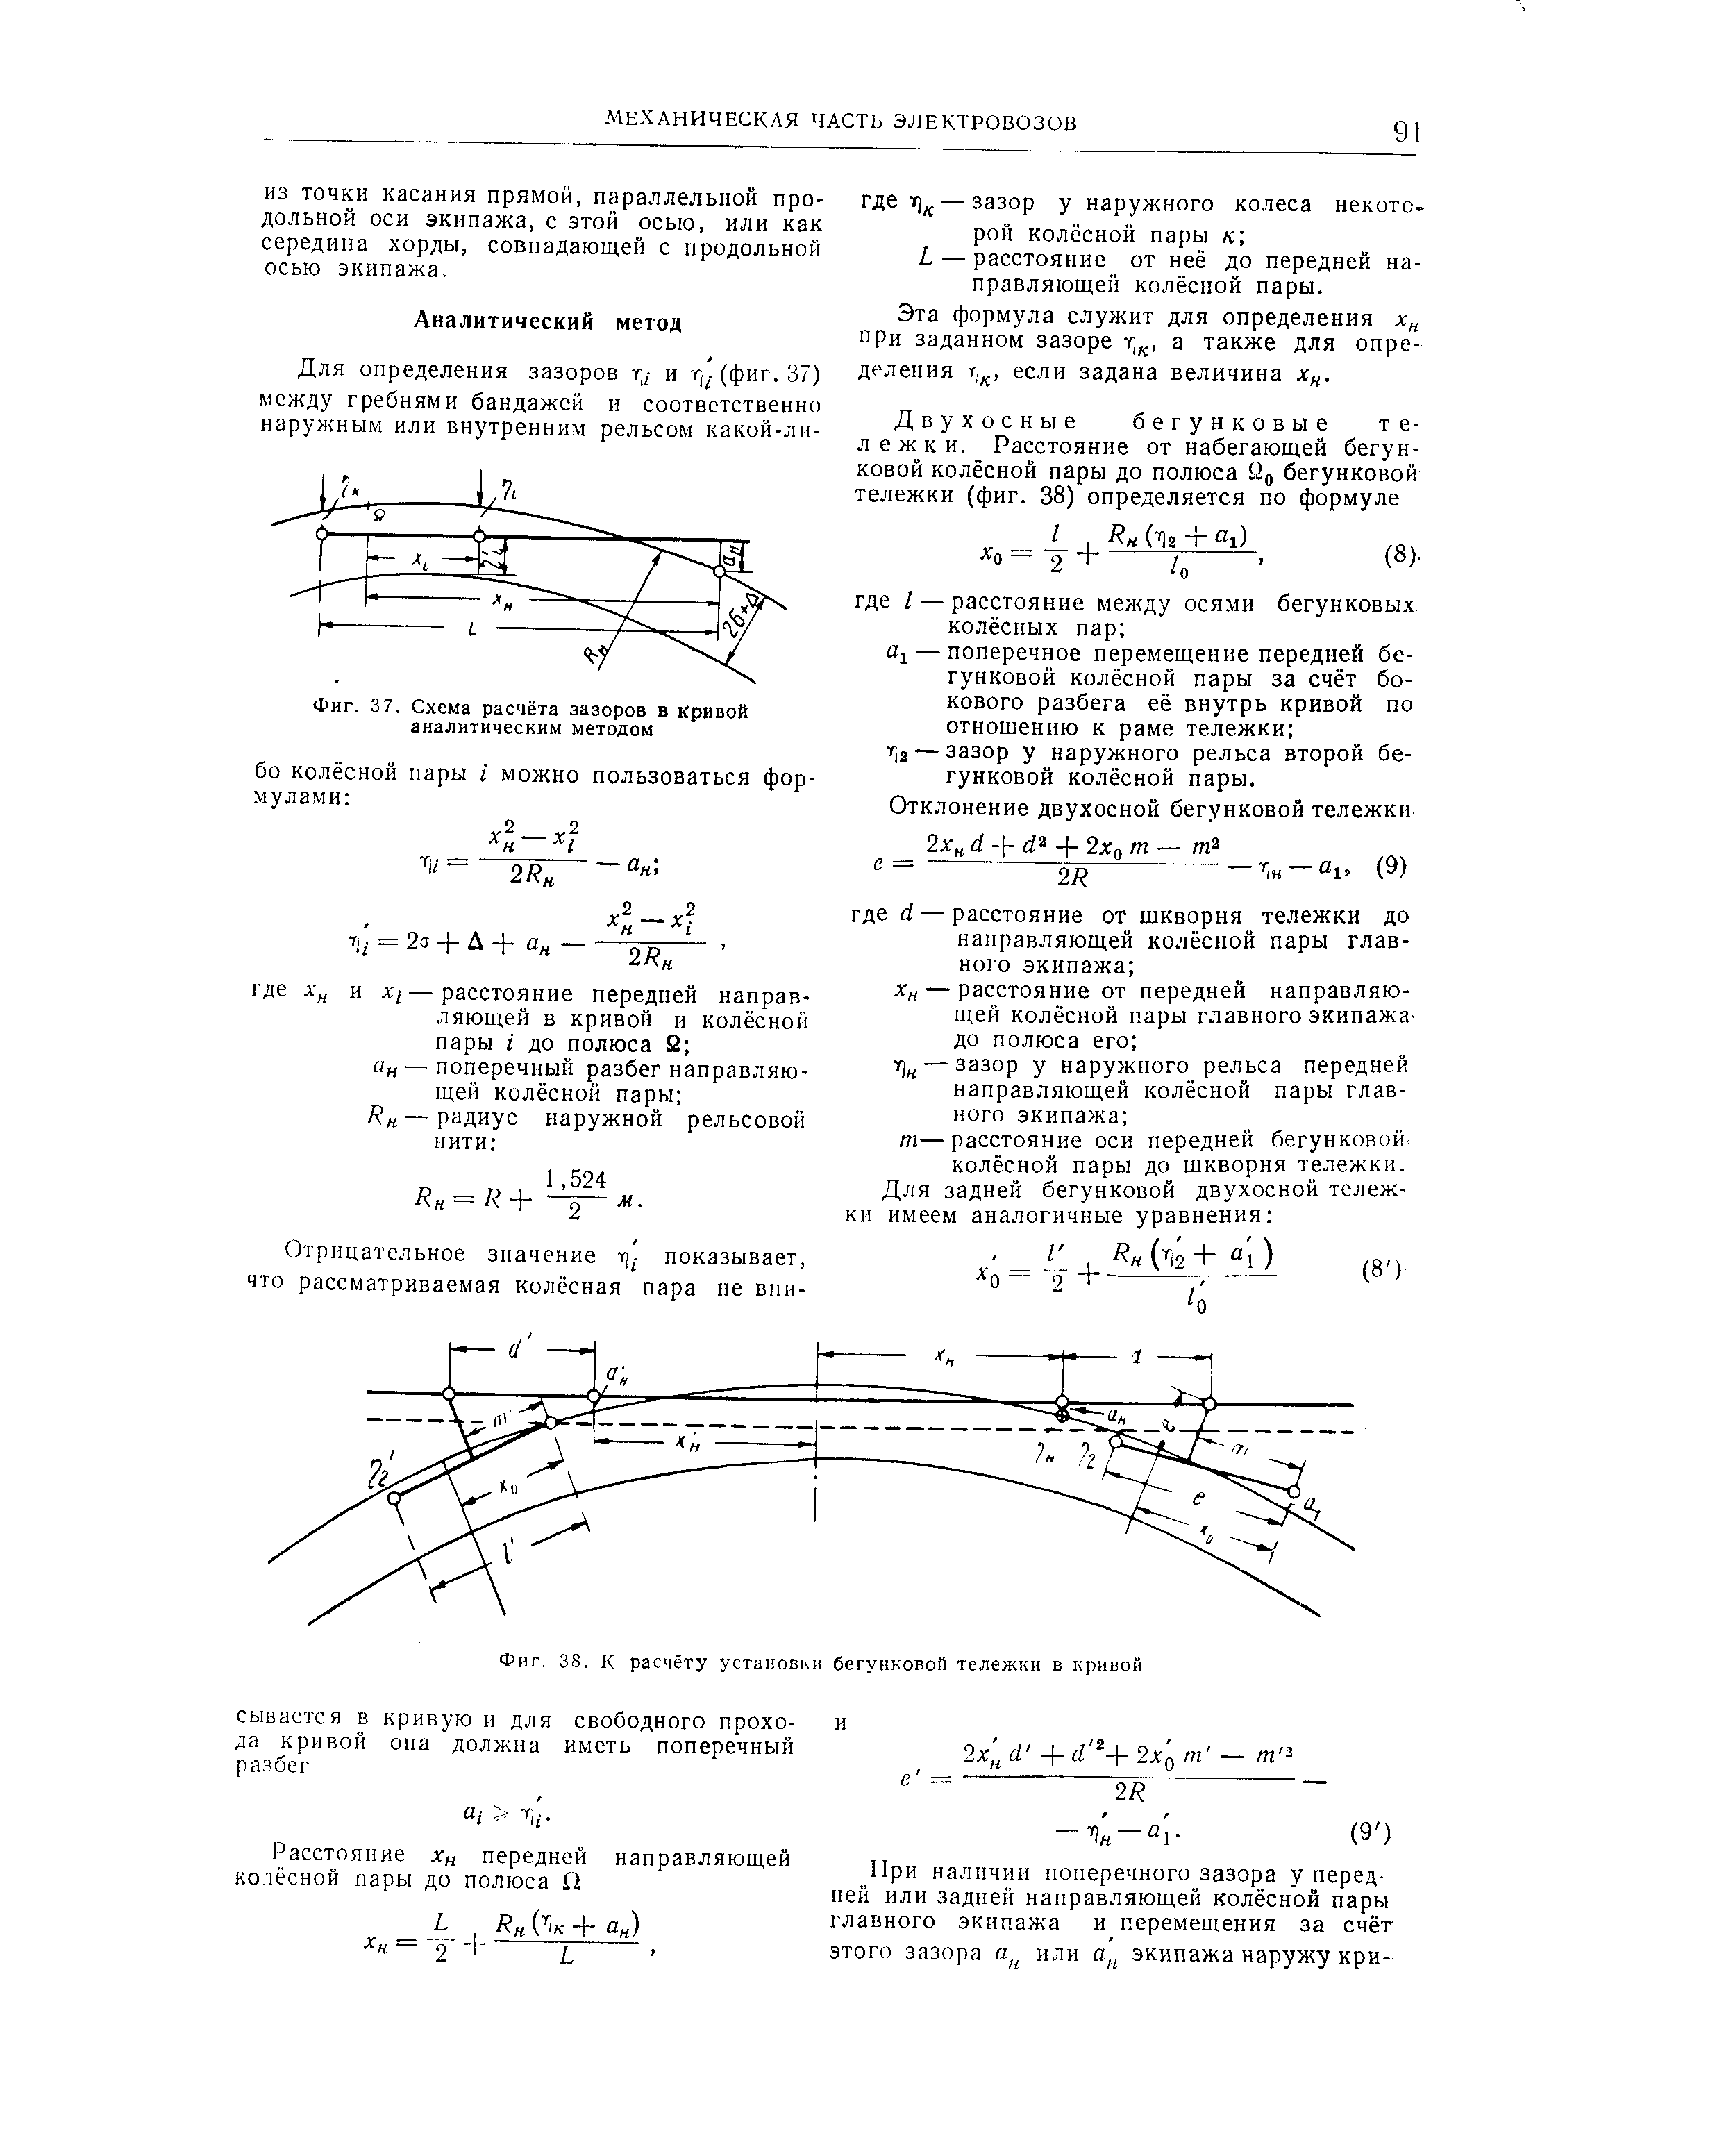 Фиг. 37. Схема расчёта зазоров в кривой аналитическим методом
